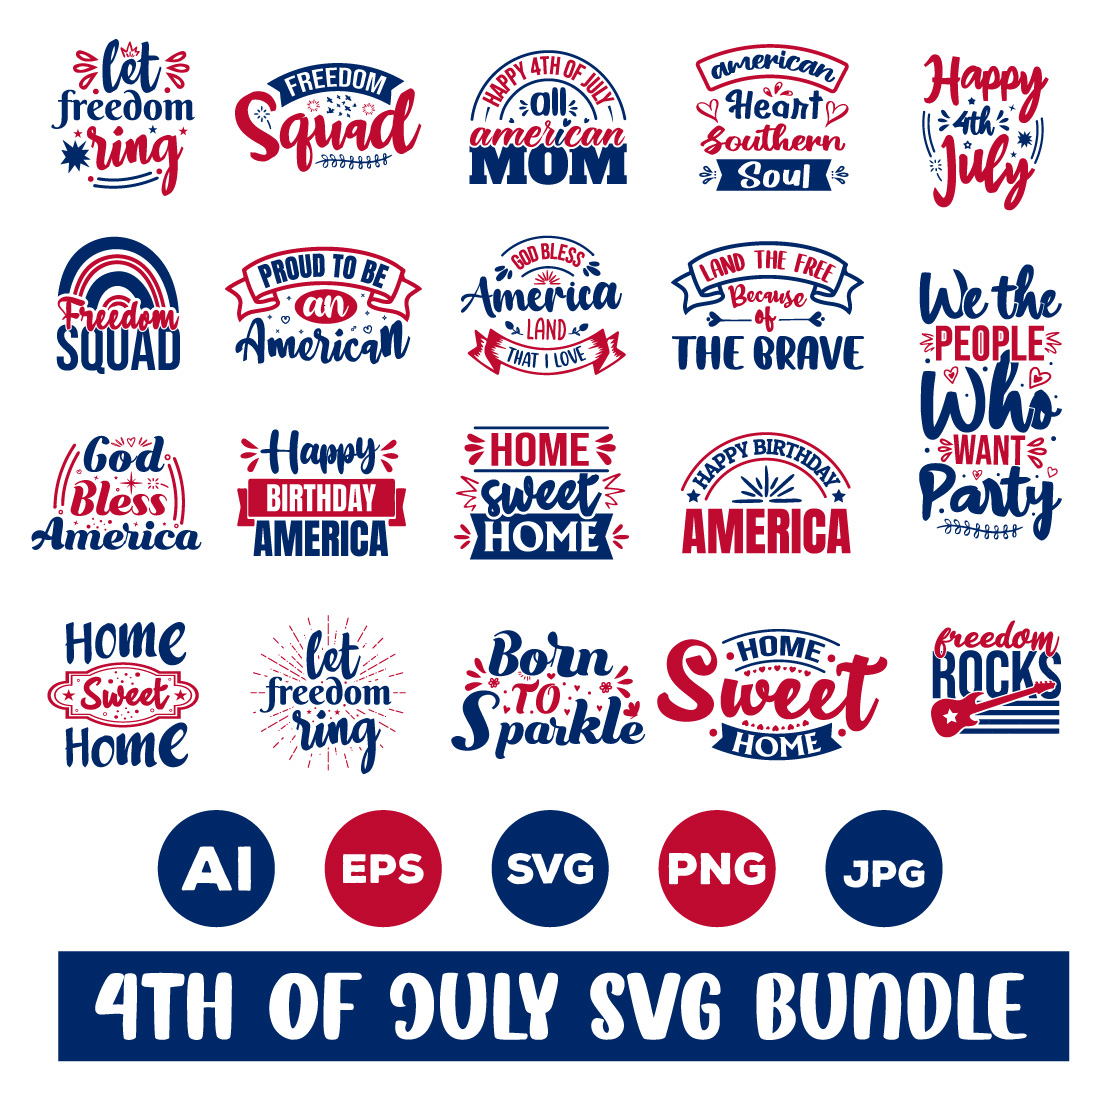 4th of July SVG Bundle.